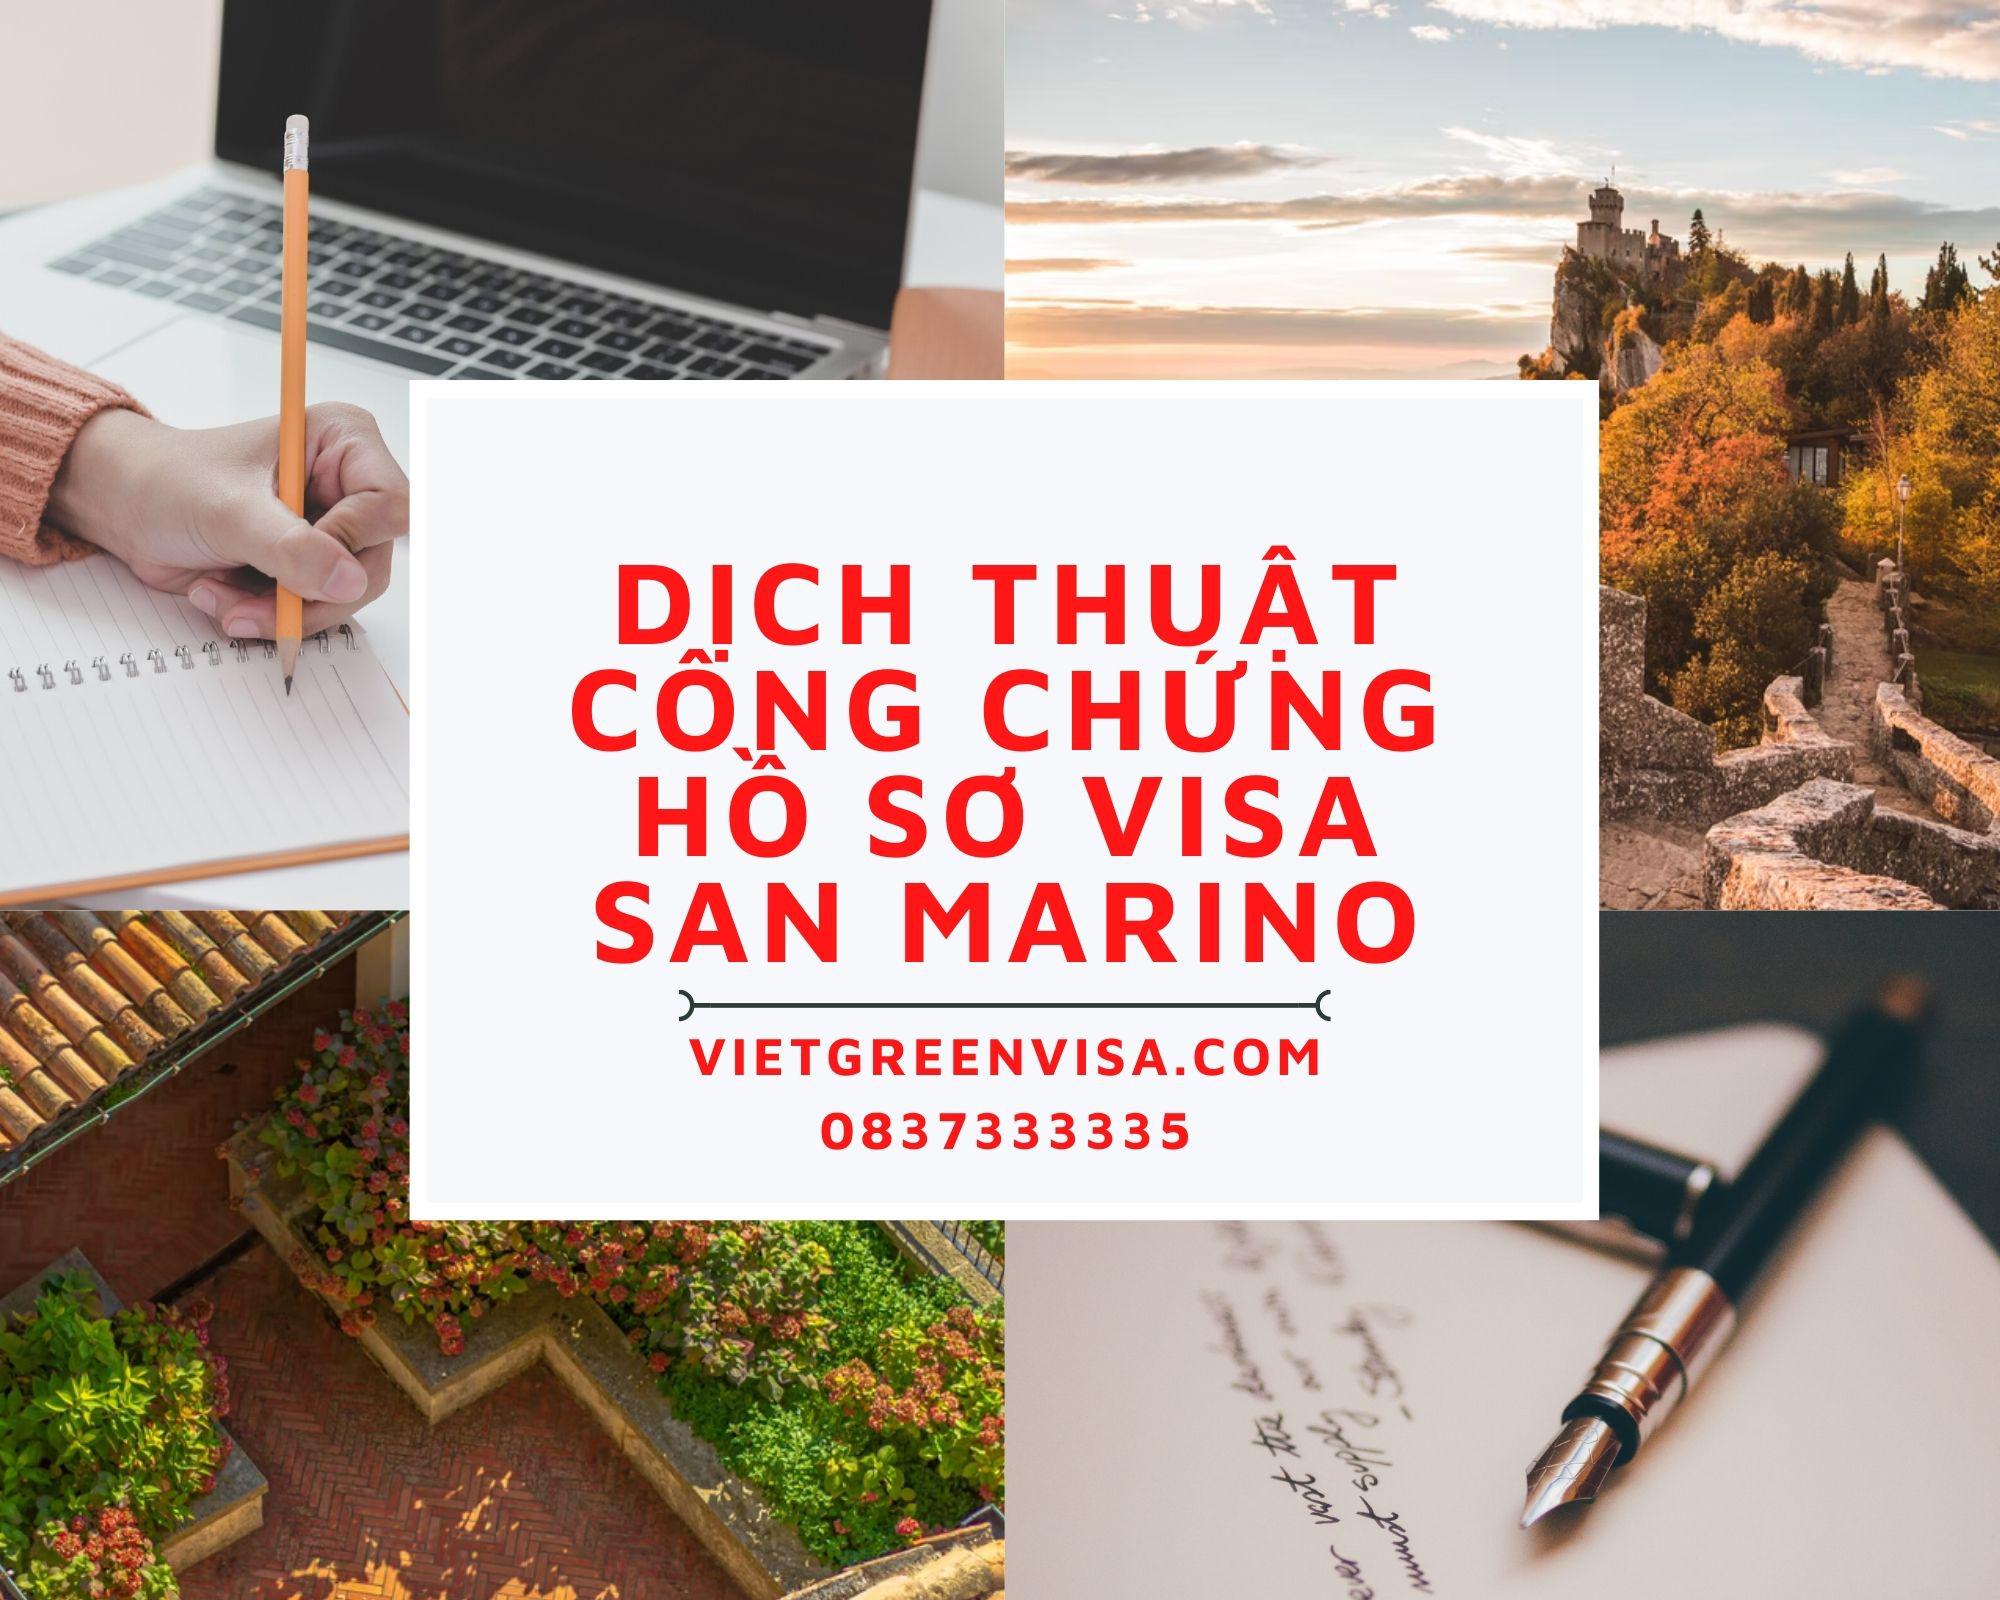 Tư vấn dịch thuật công chứng hồ sơ visa San Marino nhanh rẻ